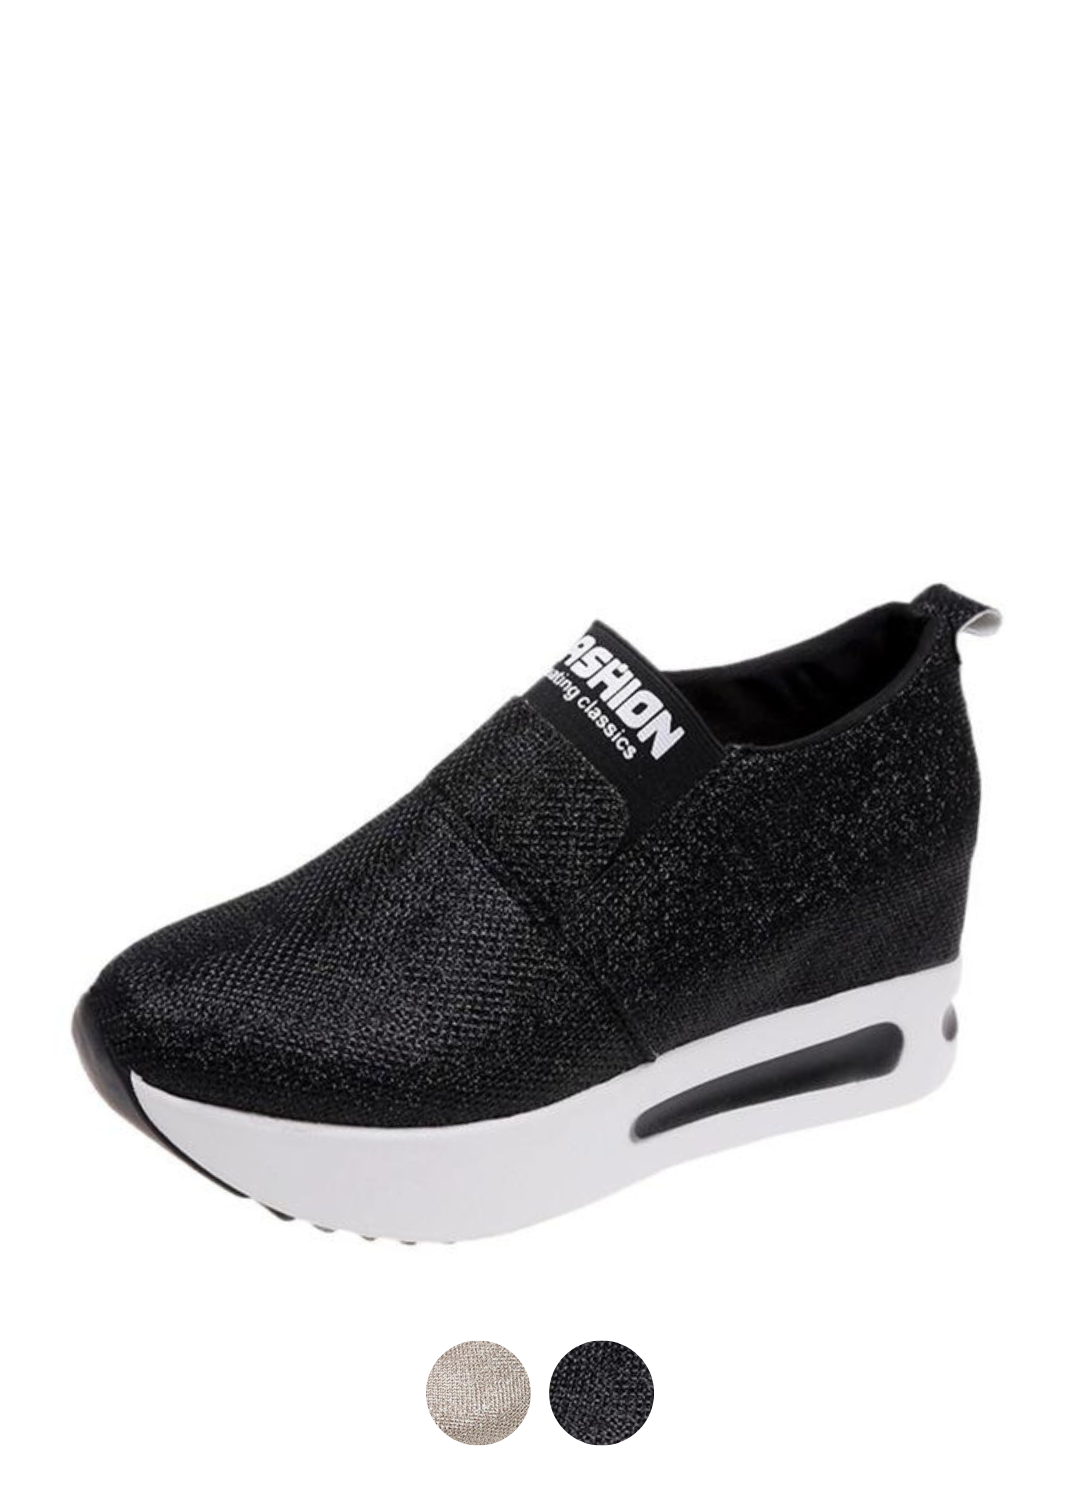 Moon V3 Women's Platform Shoes | Ultrasellershoes.com – Ultra Seller Shoes